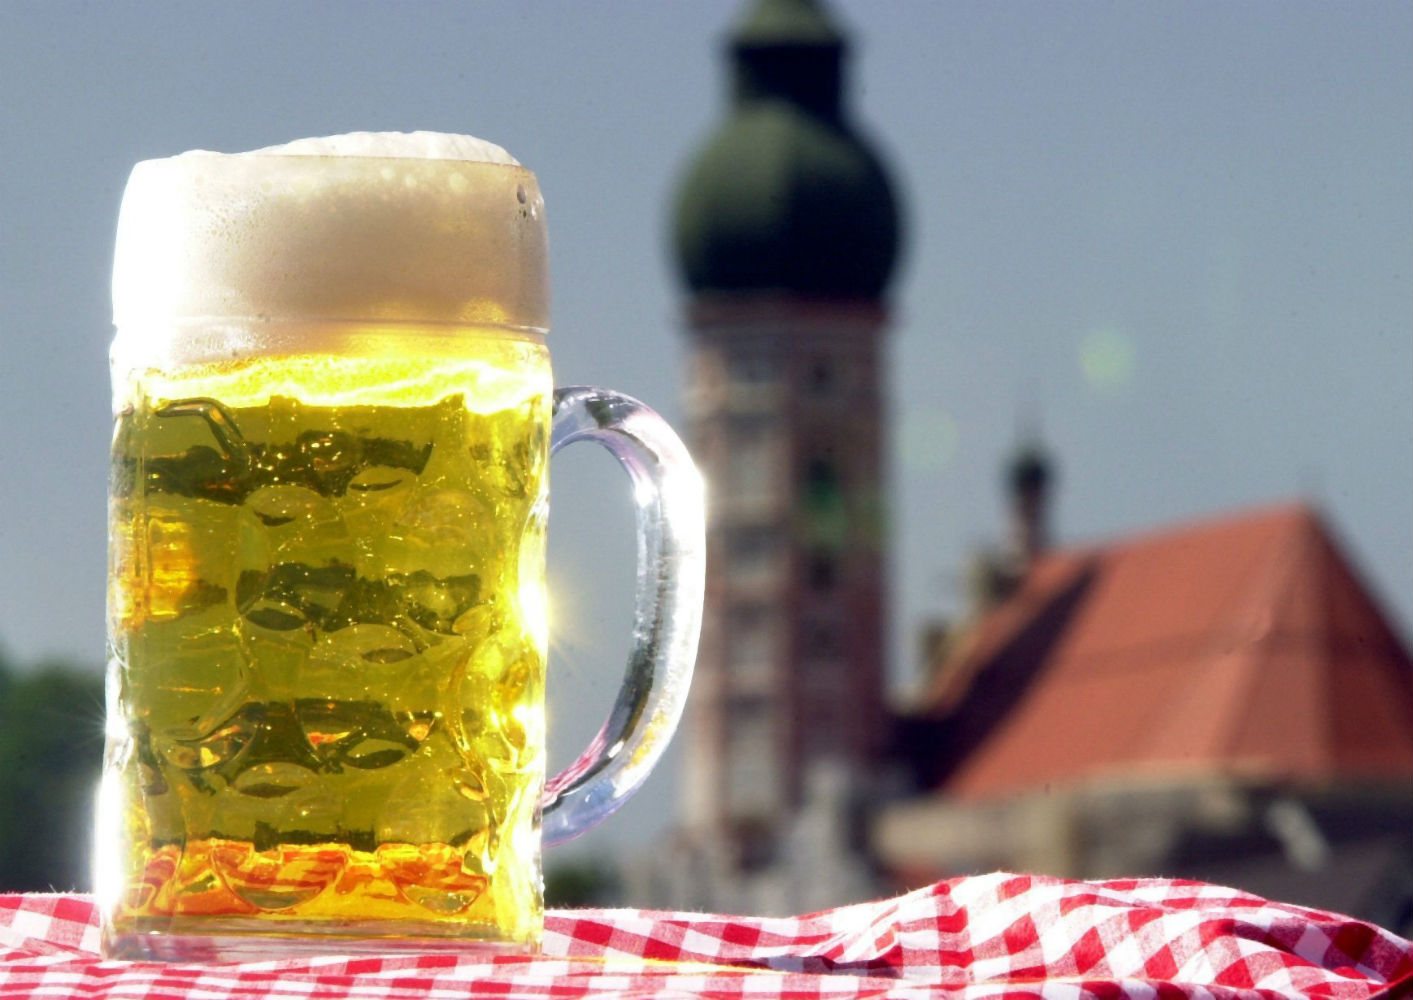 Γερμανία: Οι 10 καλύτερες ζυθοποιίες για να επισκεφτείς την Ημέρα Μπύρας